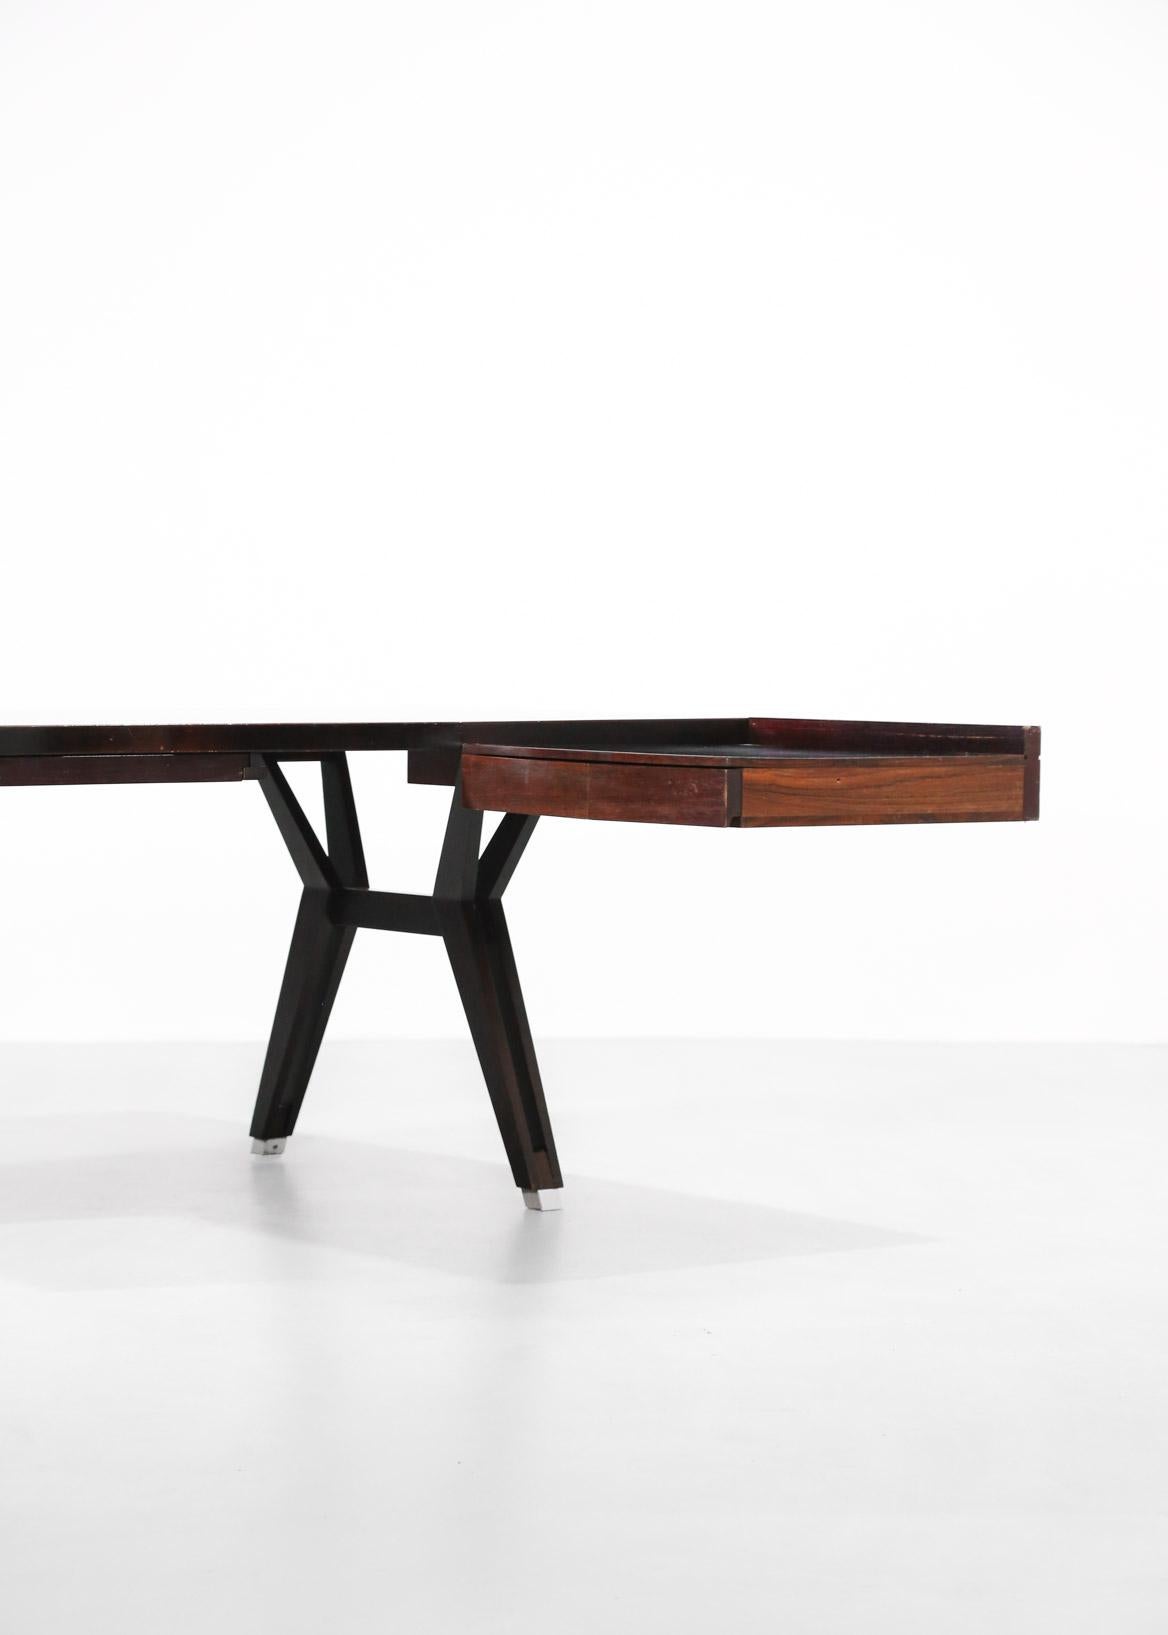 Large Ico Parisi Desk for MIM, Italian Design 7